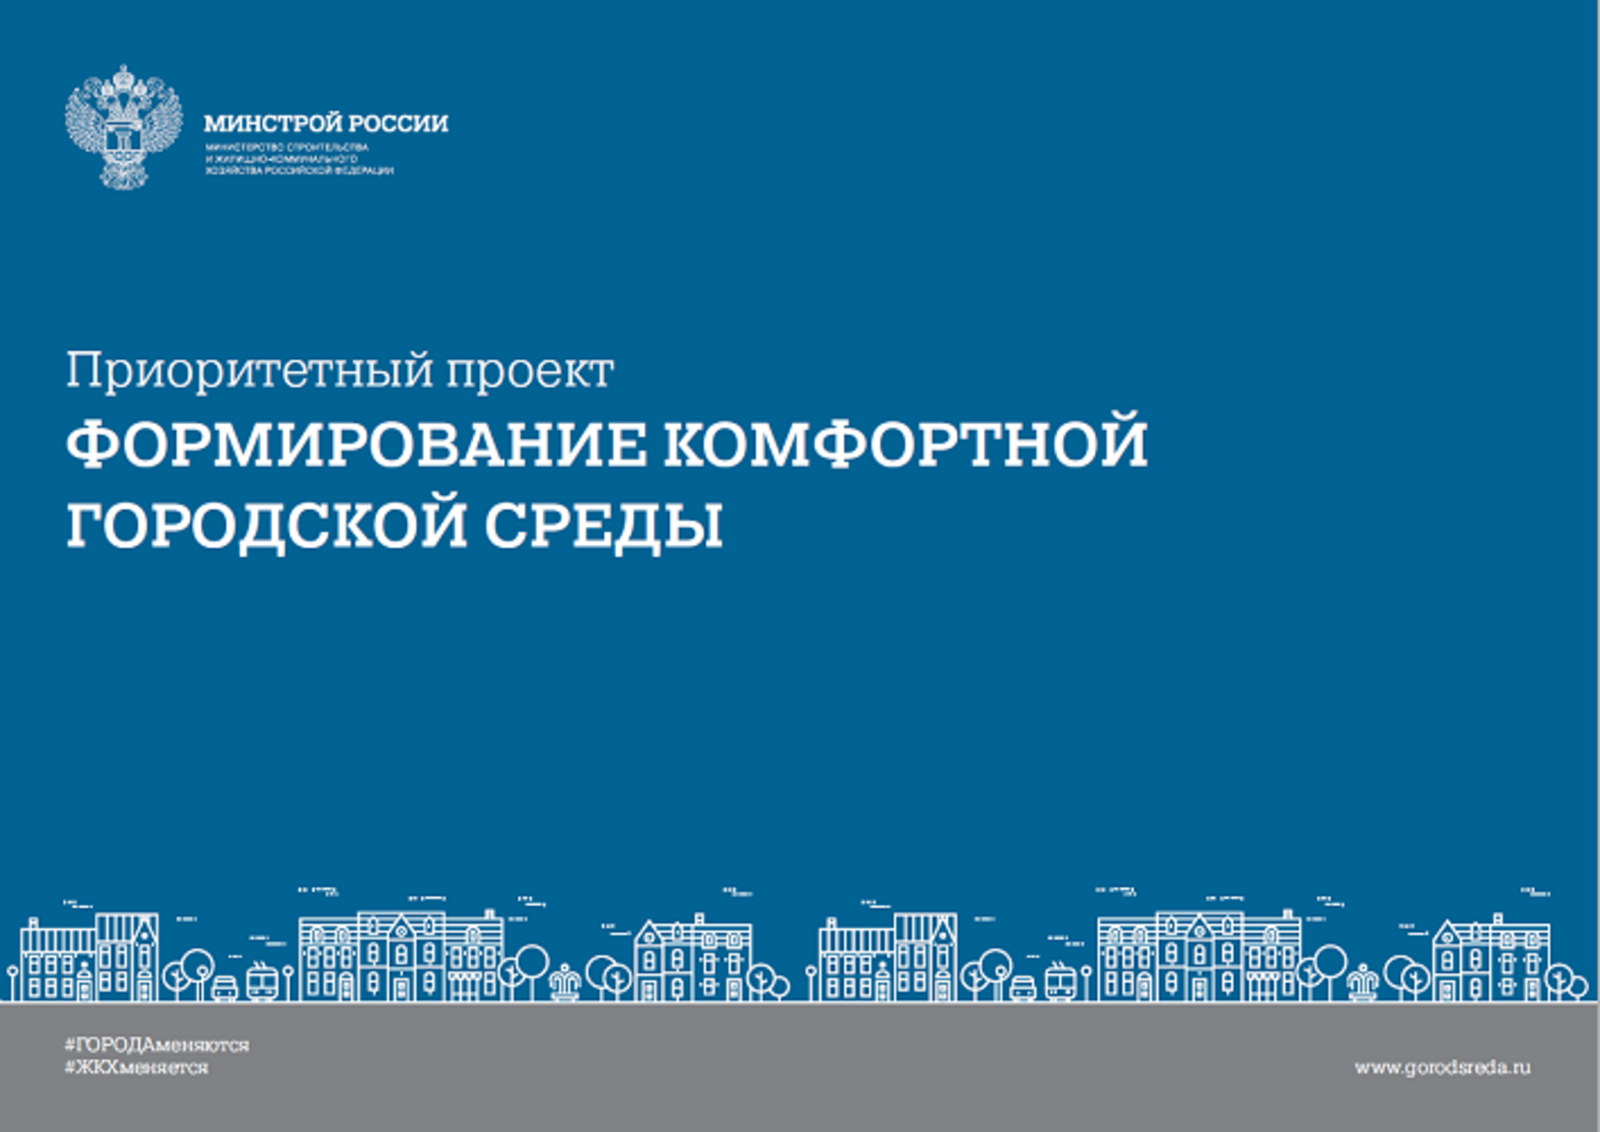 Формирование комфортной городской среды: продолжается всероссийское онлайн-голосование за объекты благоустройства